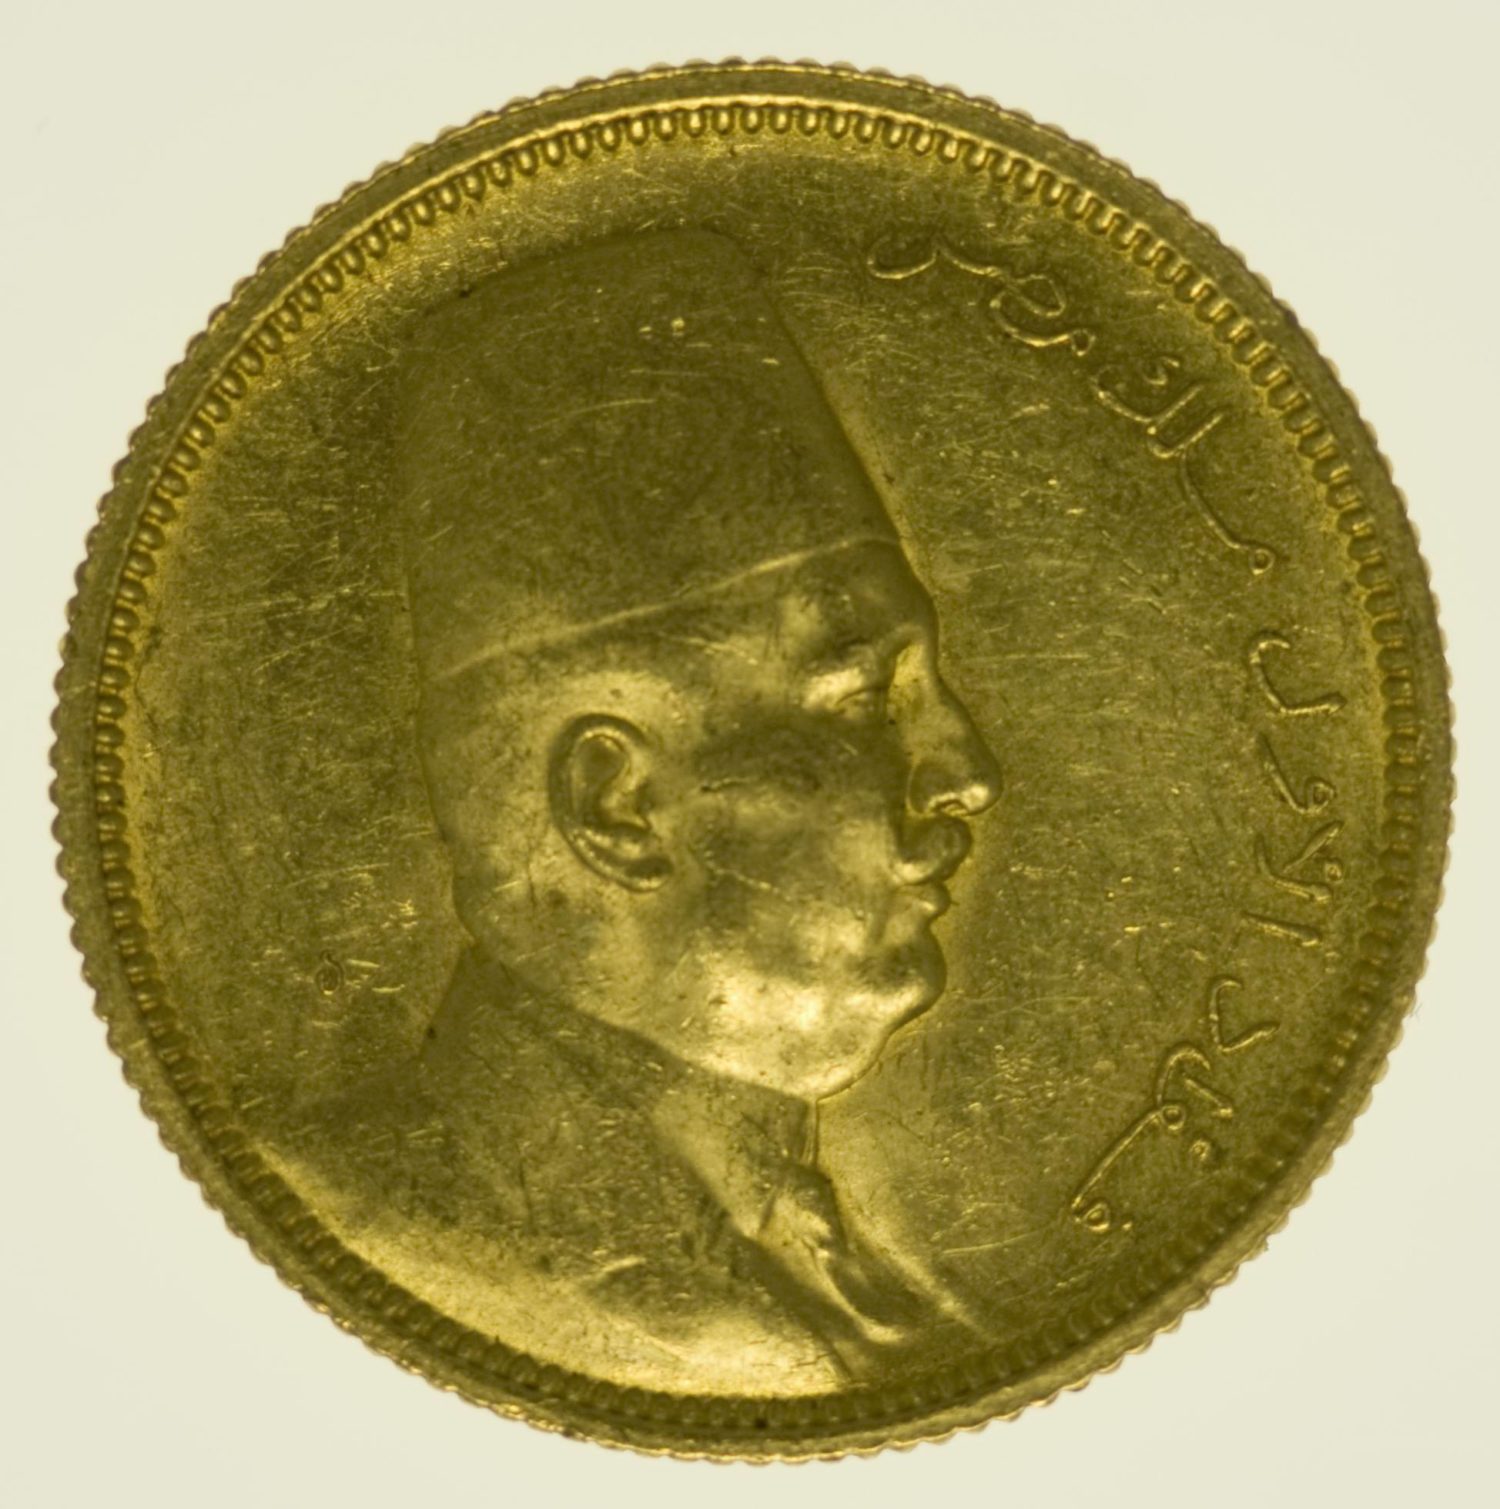 Ägypten Fuad I. 100 Piaster 1922 Gold 7,44 Gramm fein RAR